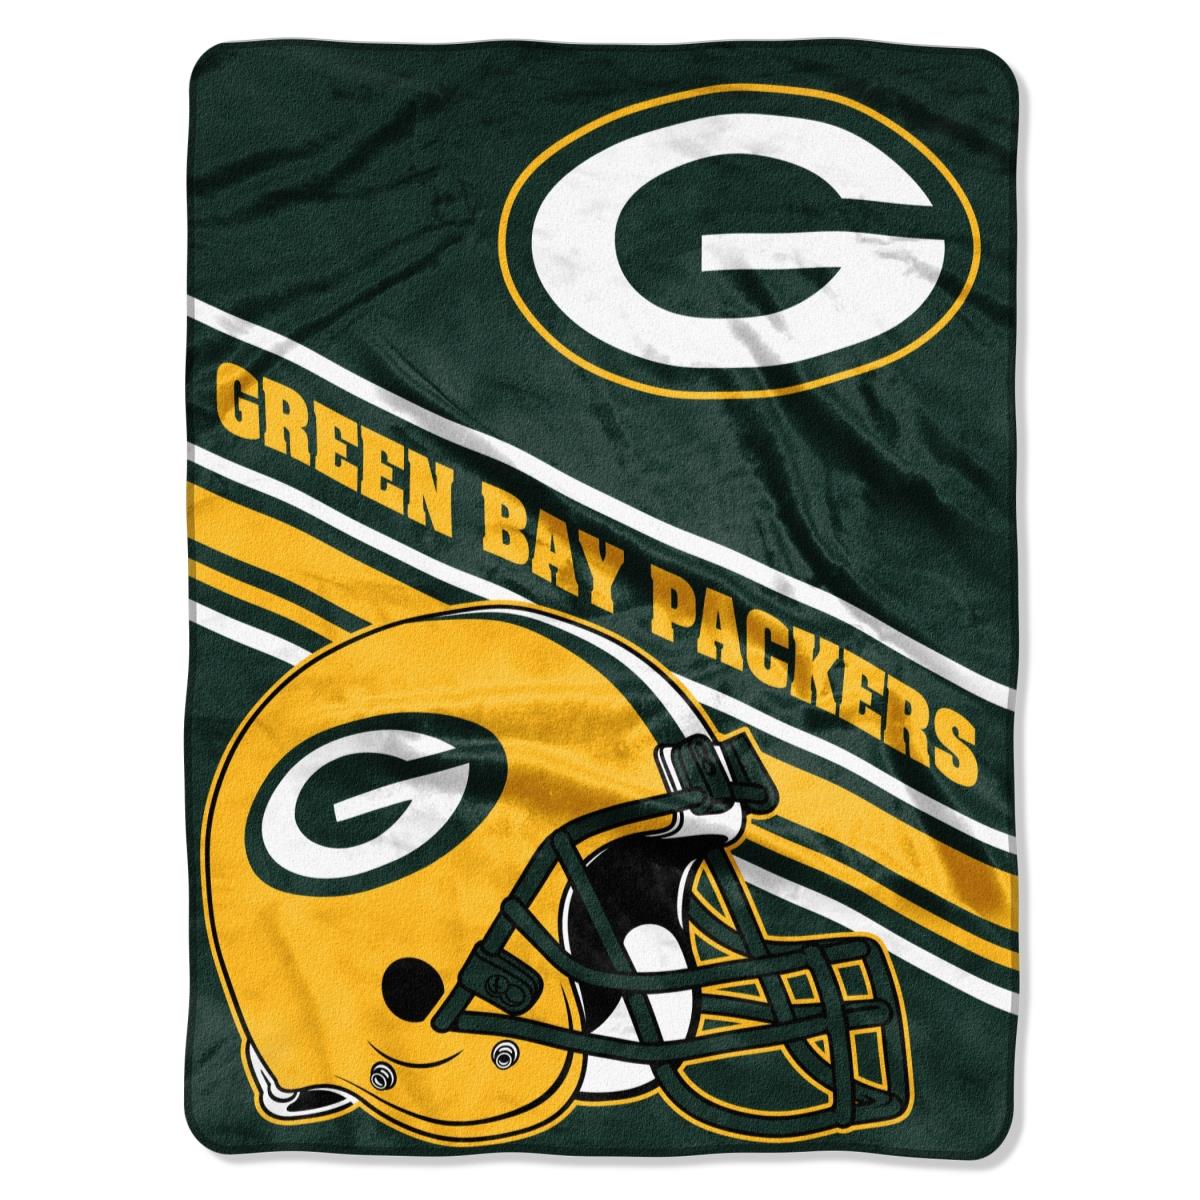 Picture of Northwest 9060413088 Green Bay Packers Raschel Slant Design Blanket - 60 x 80 in.